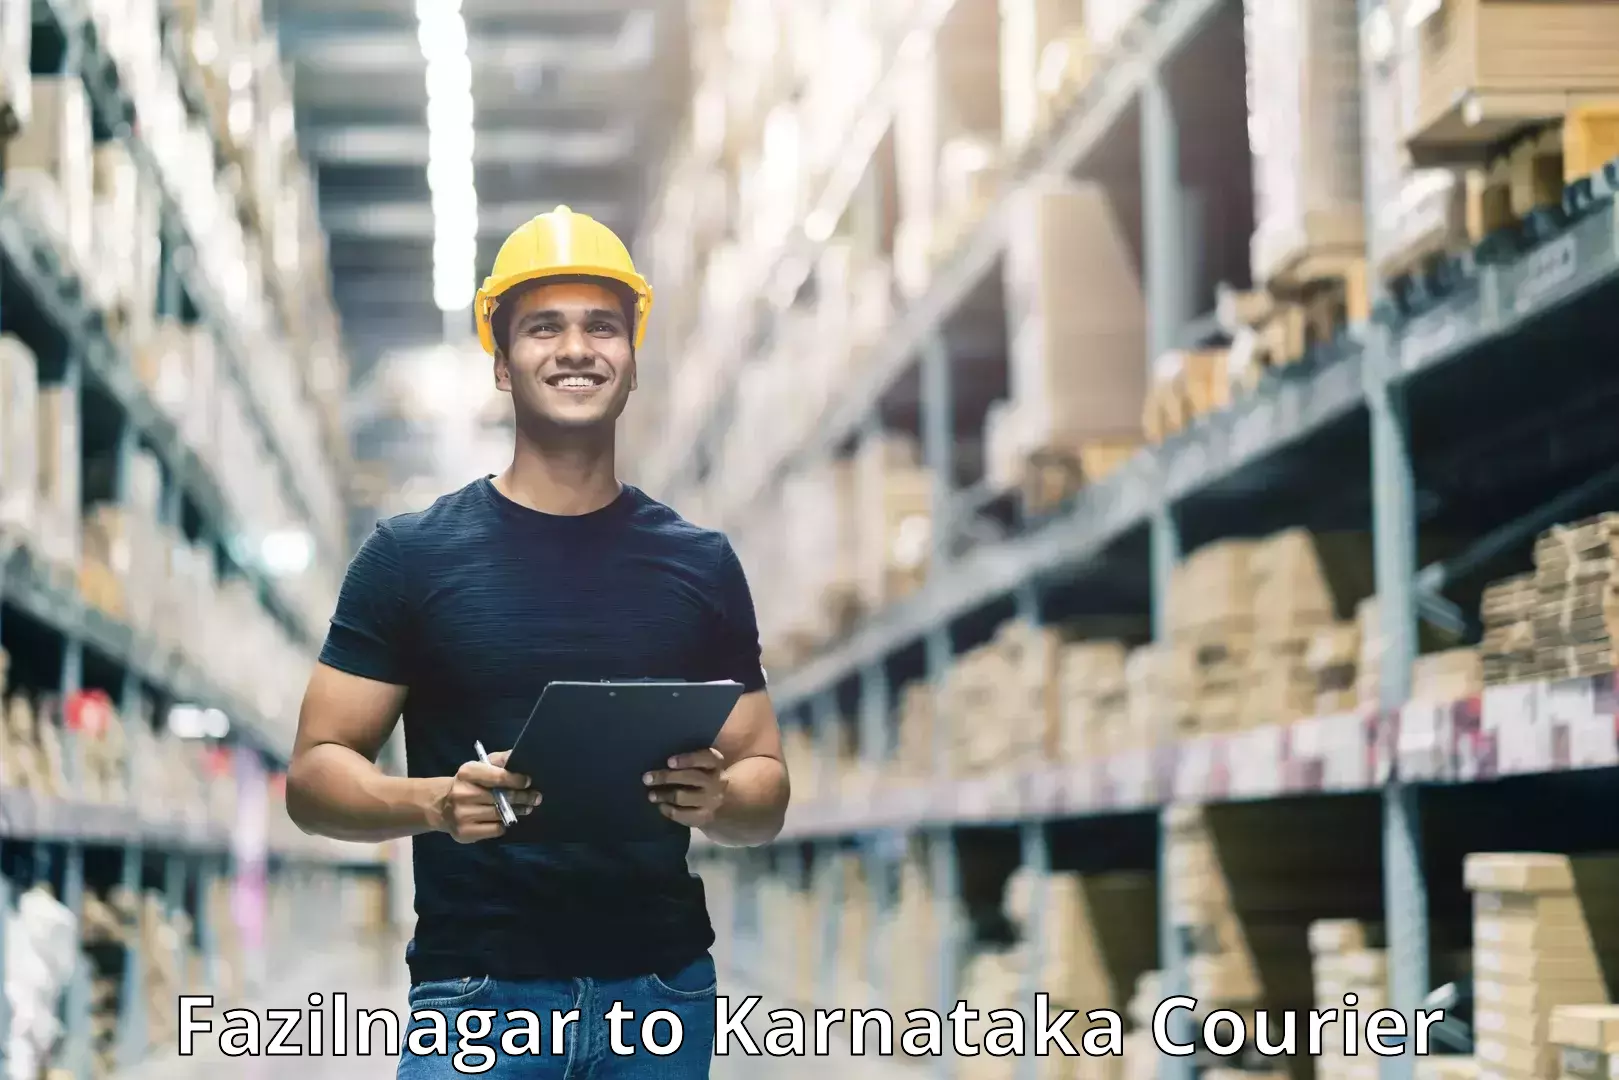 Reliable courier services Fazilnagar to Basavanagudi